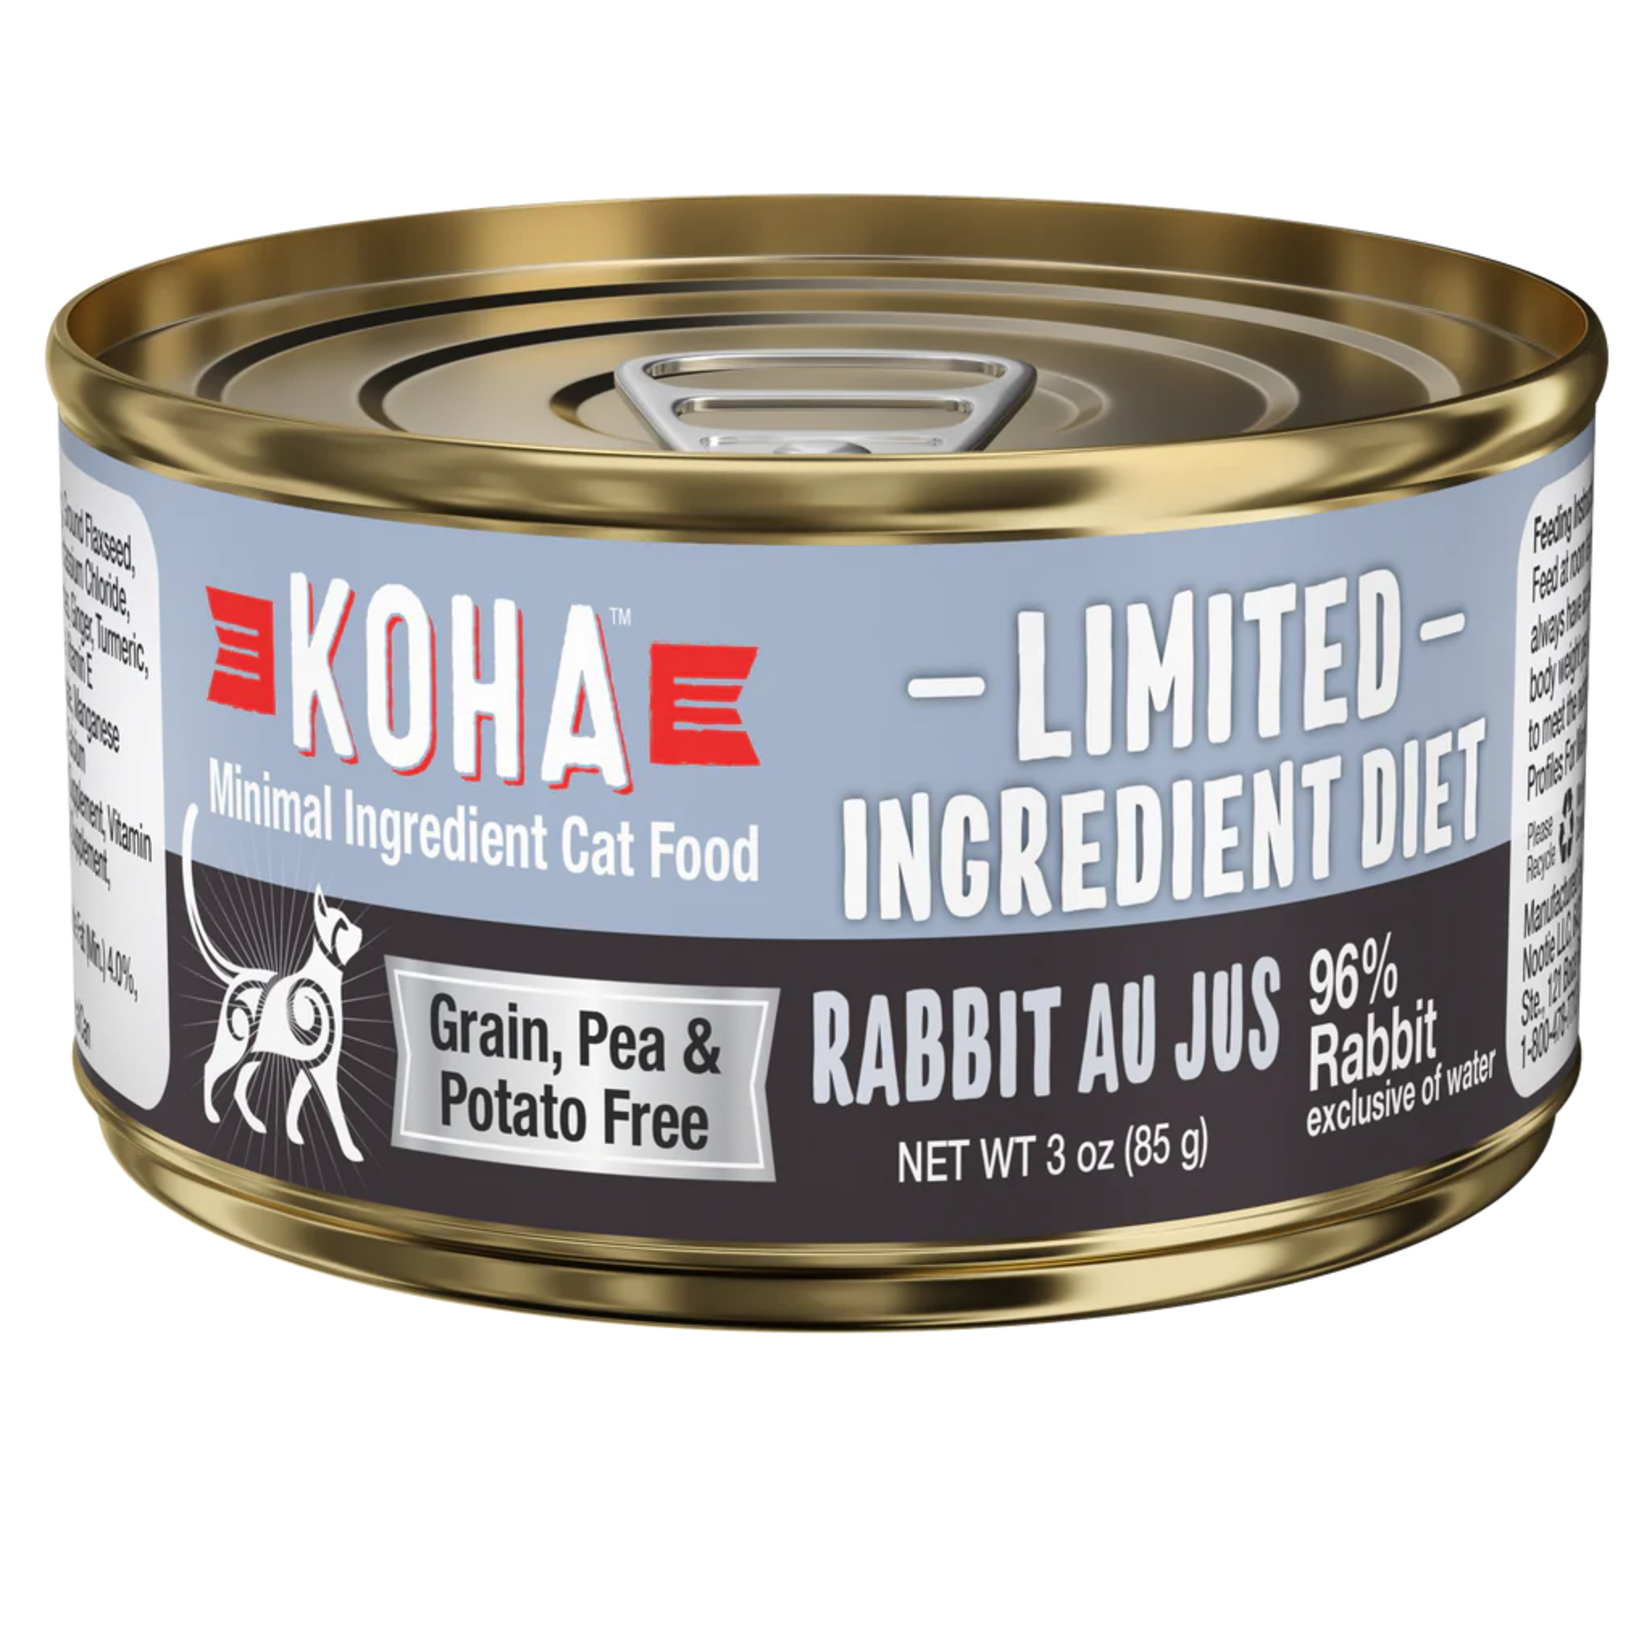 Koha Pet Food Koha Pet Food Limited Ingredient Diet - Rabbit Au Jus for Cats